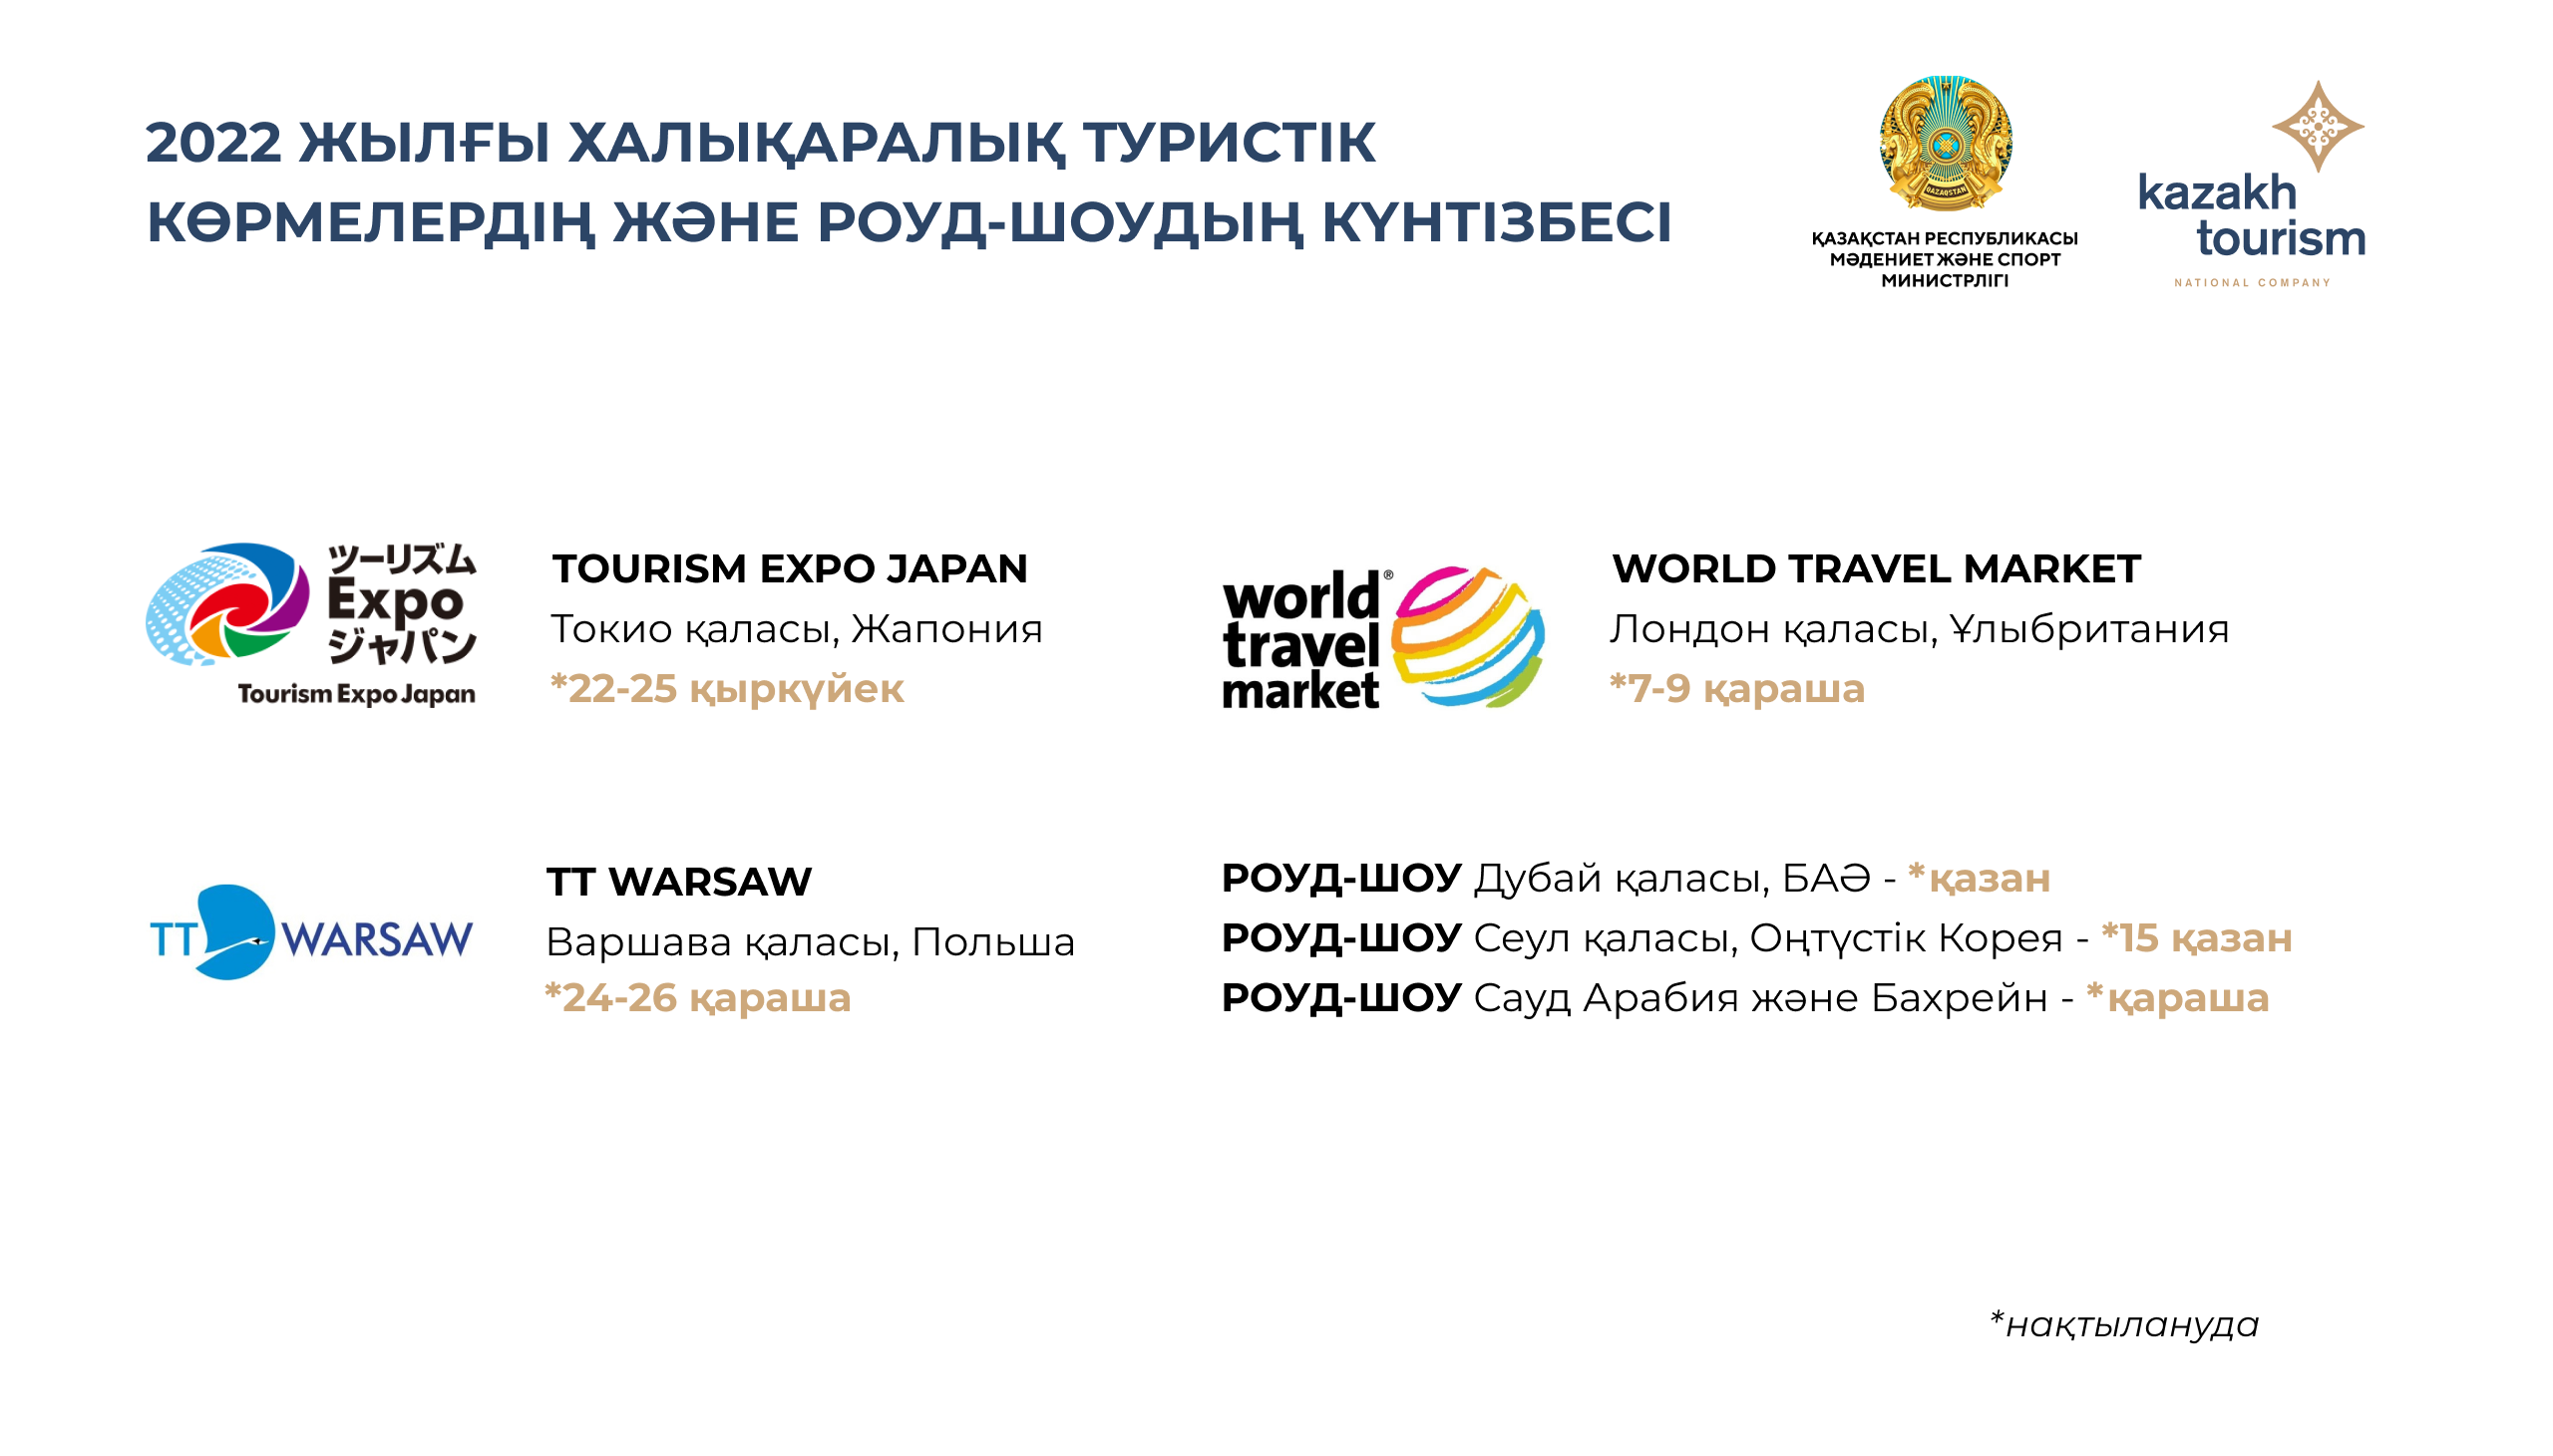 Туристік бизнес өкілдері үшін Tourism Expo Japan, World Travel Market, TT Warsaw көрмелеріне және Сеул, Дубай қалаларында роуд-шоуларға қатысу үшін тіркеу ашылды